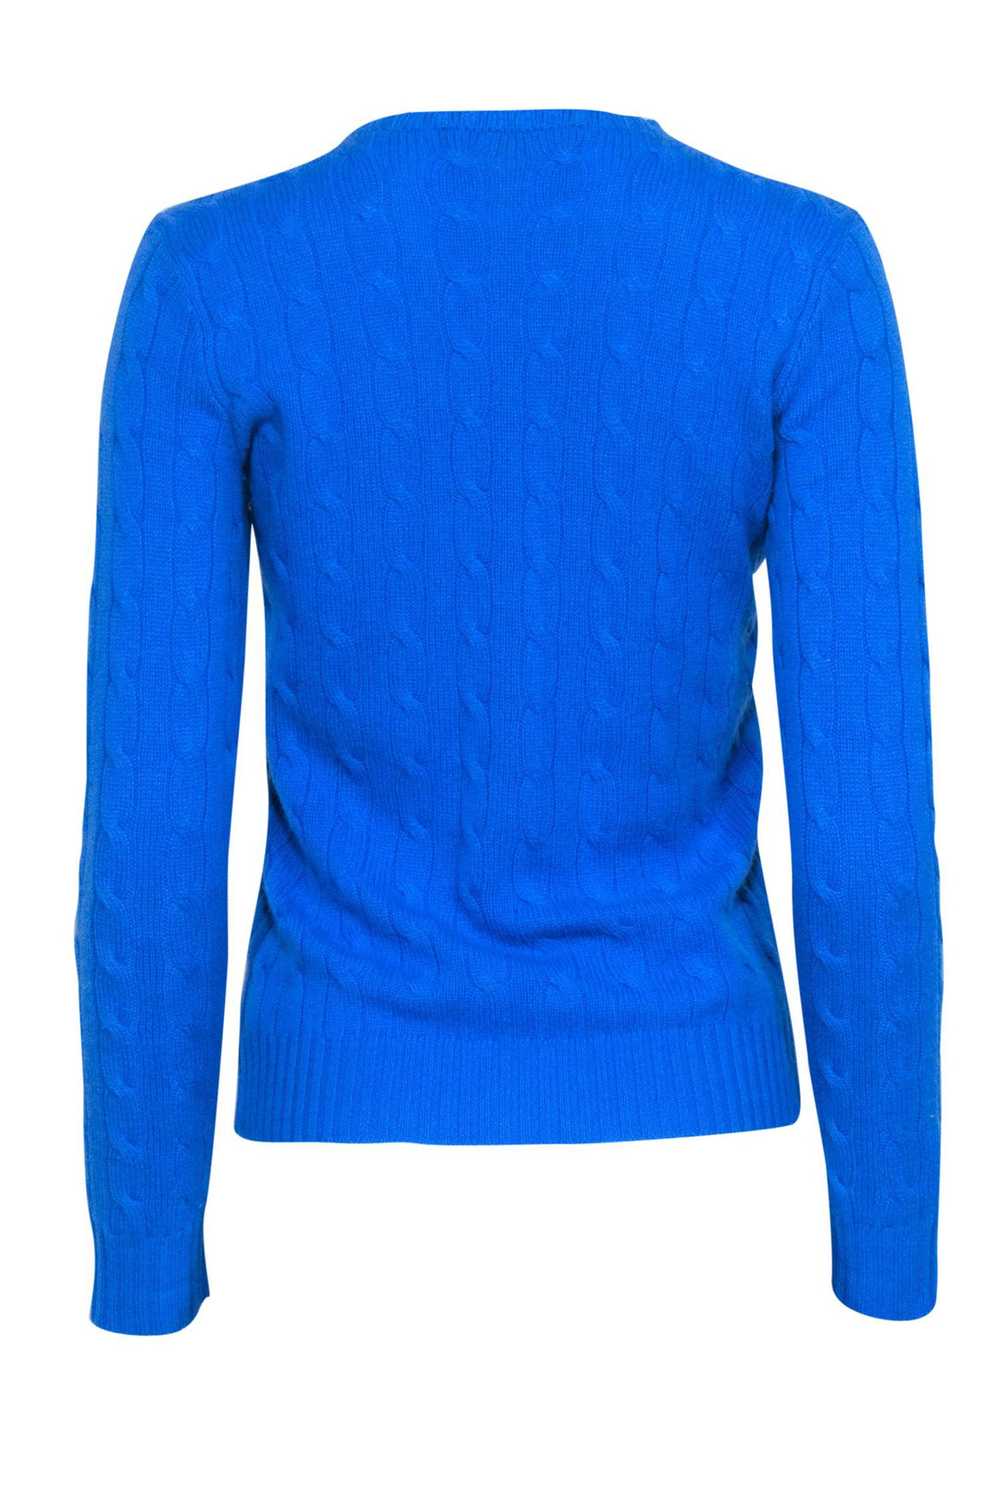 Ralph Lauren - Blue Cable Knit Sweater Sz S - image 3